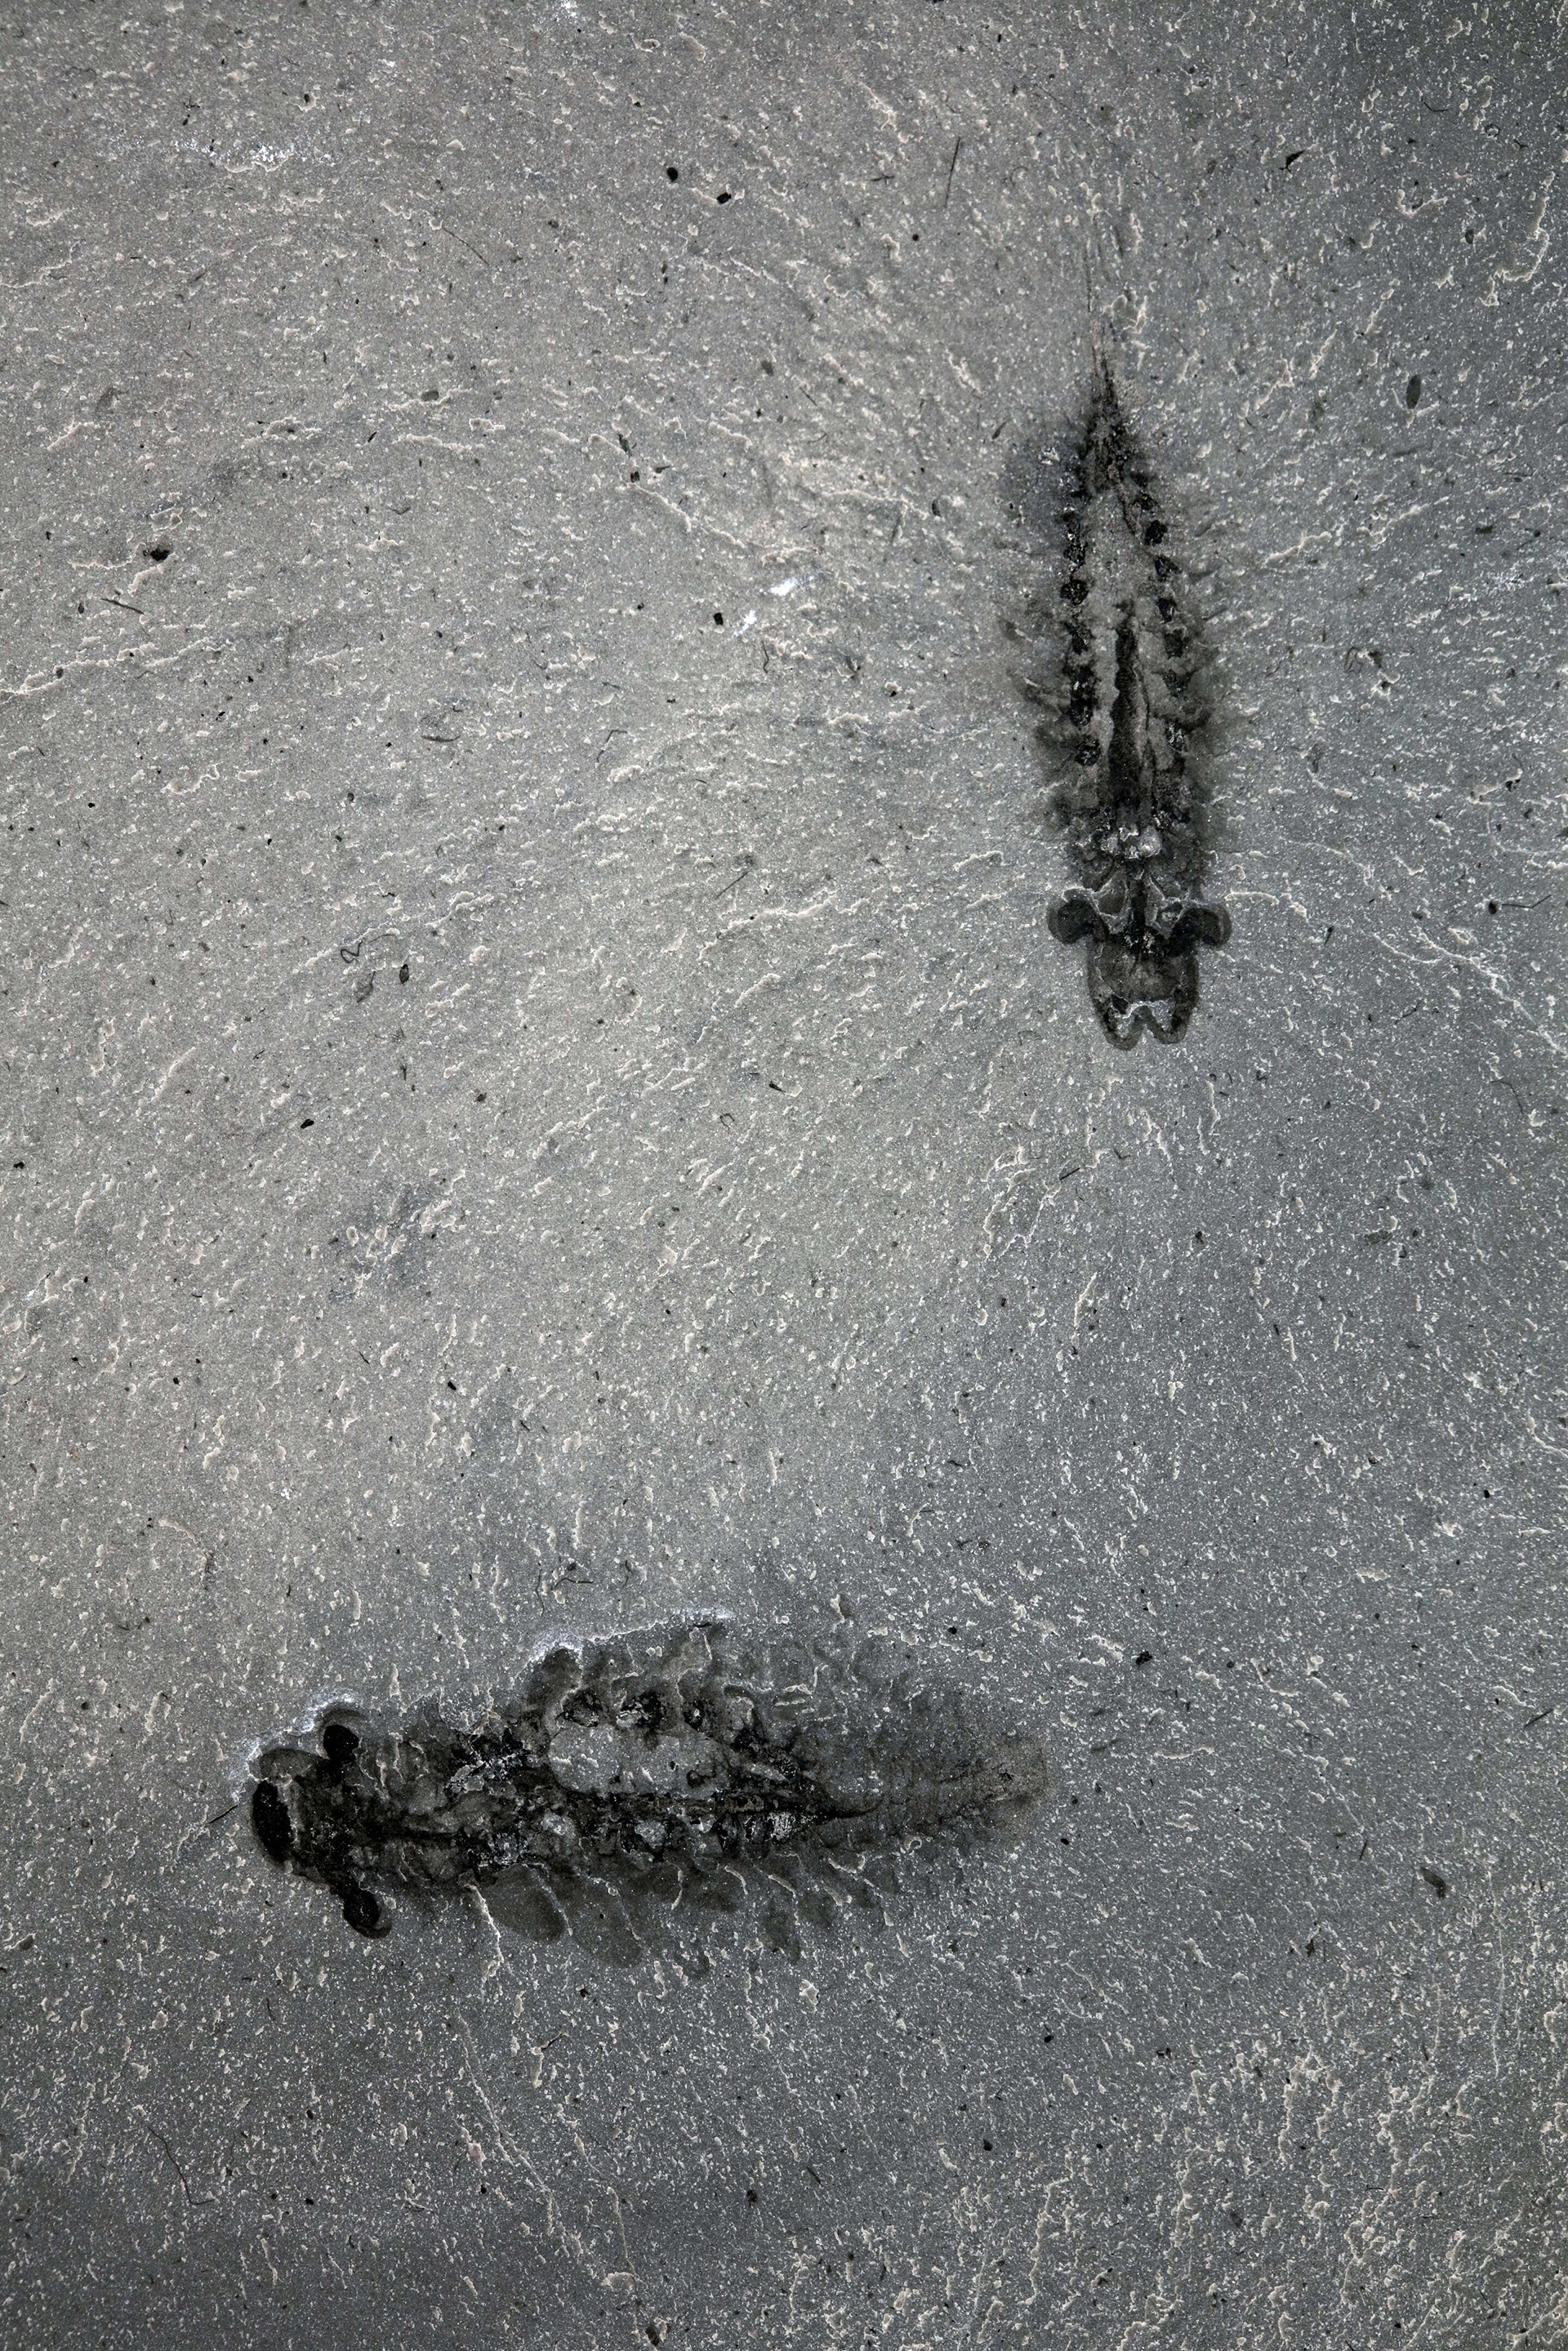 Pareja de ejemplares fósiles de Stanleycaris hirpex, ejemplar ROMIP 65674.1-2 
Crédito: Jean-Bernard Caron, gentileza Museo Real de Ontario